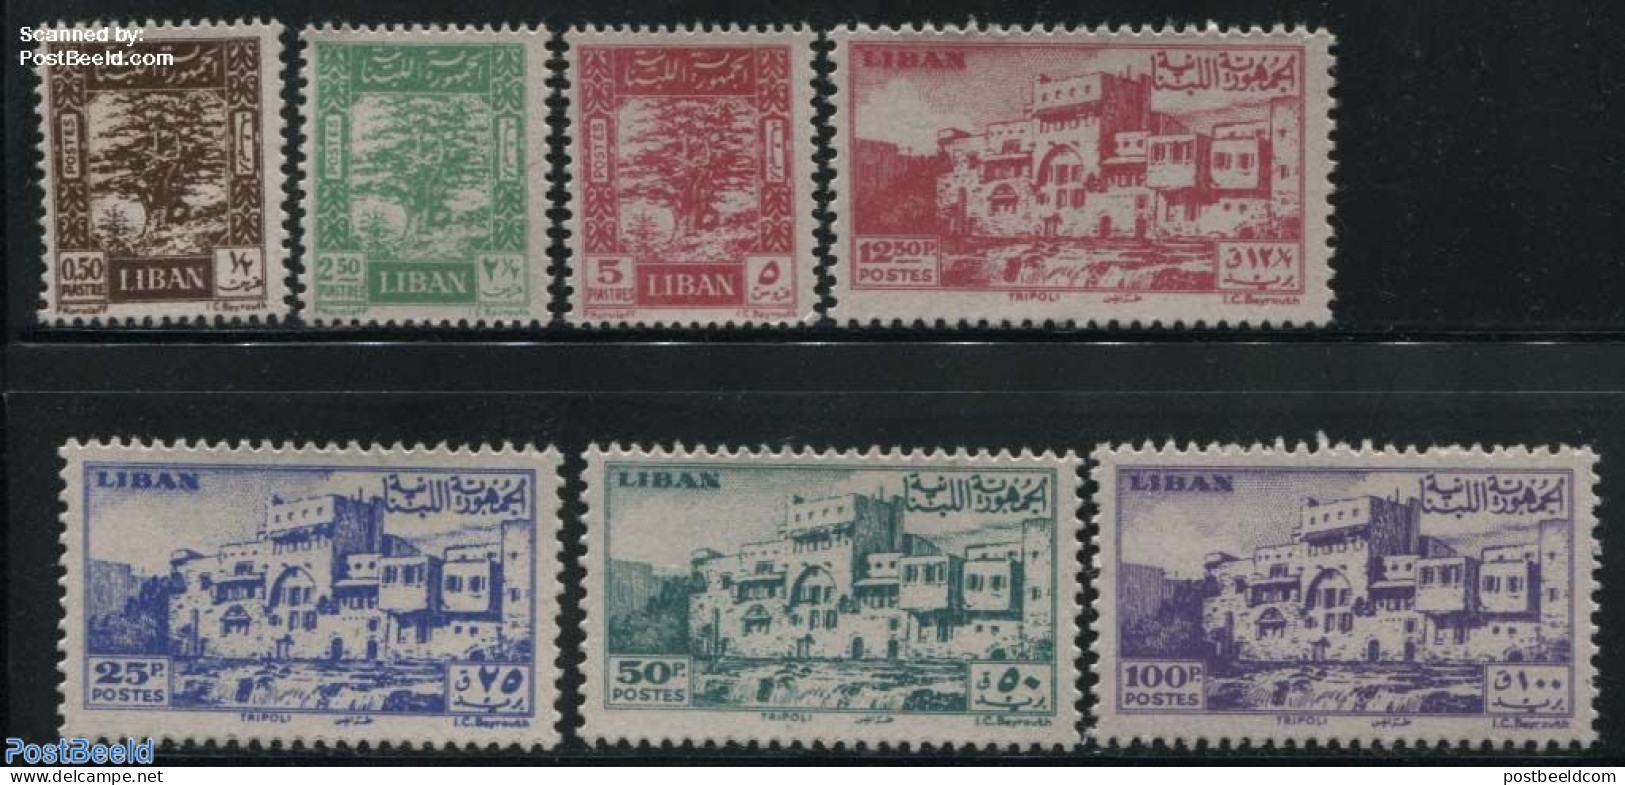 Lebanon 1947 Definitives 7v, Mint NH - Lebanon